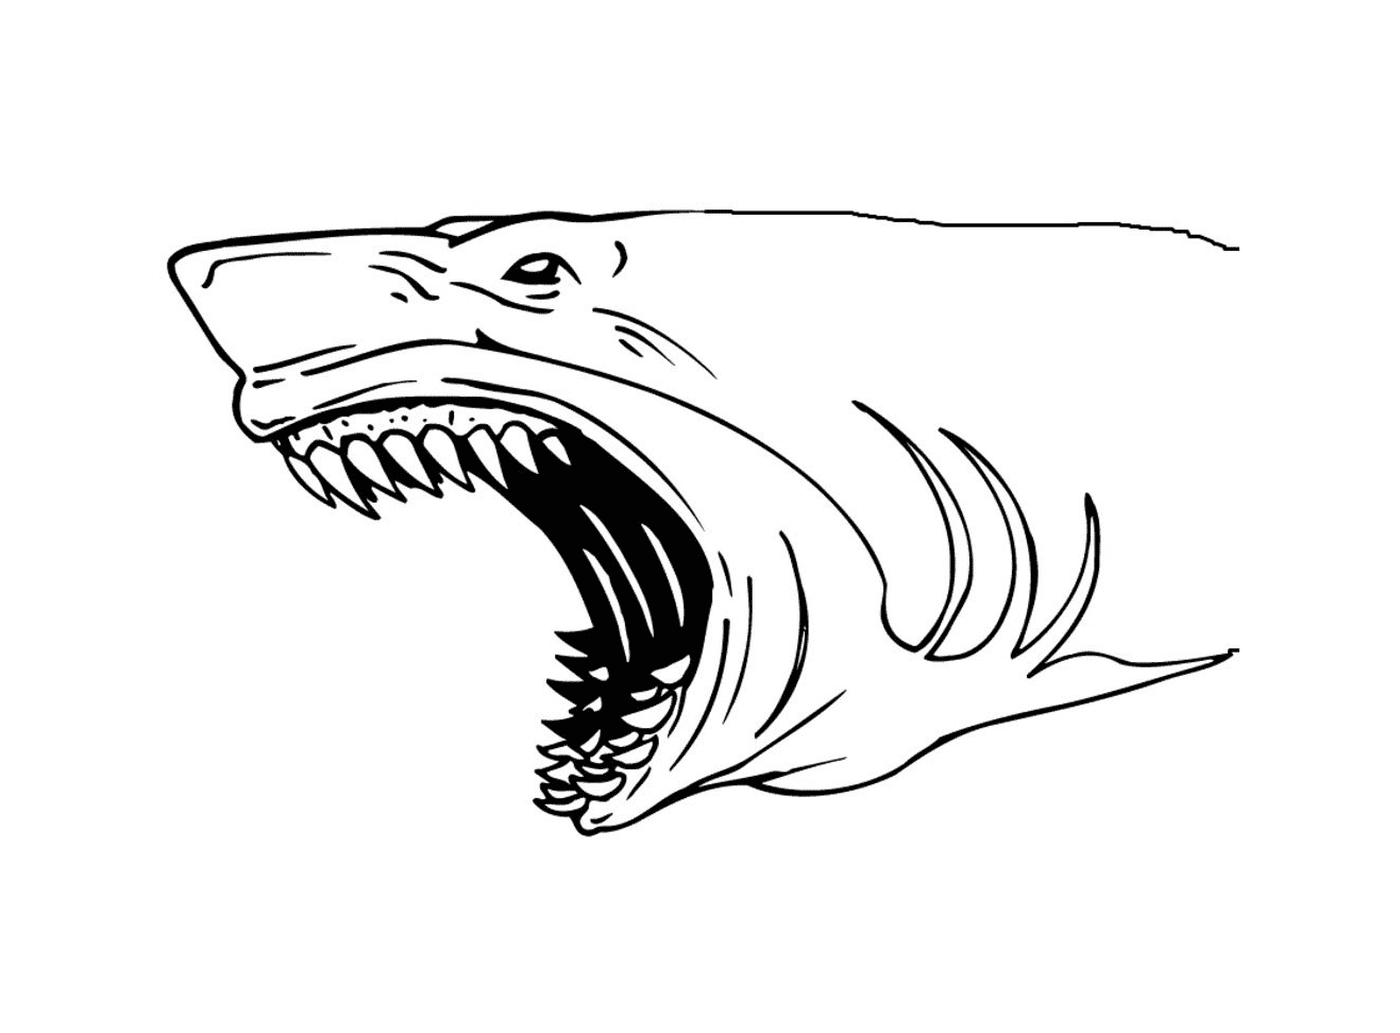  Haie mit großen Zähnen 